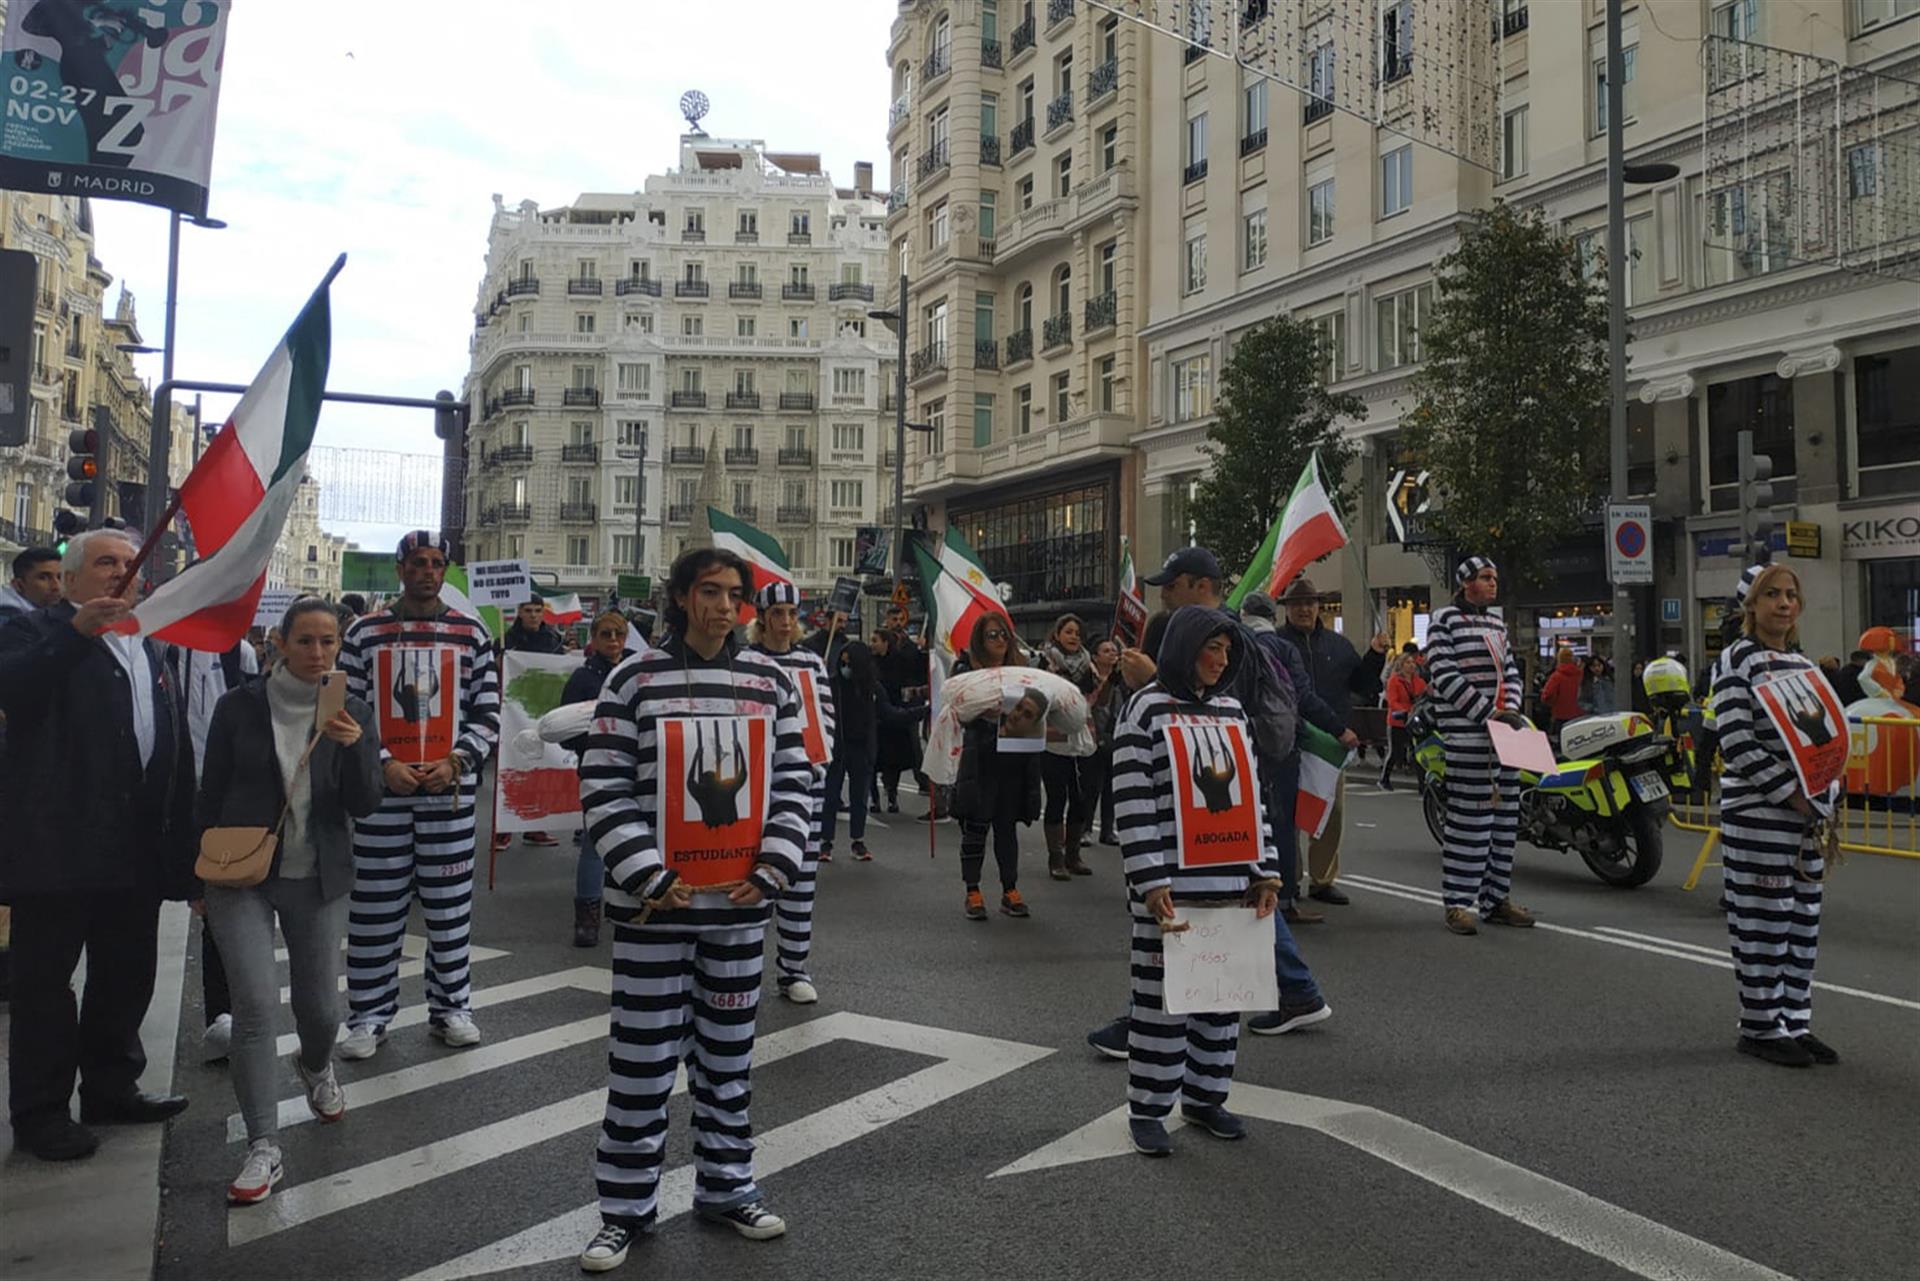 Iraníes protestan en Madrid contra las "masacres de la dictadura" de su país